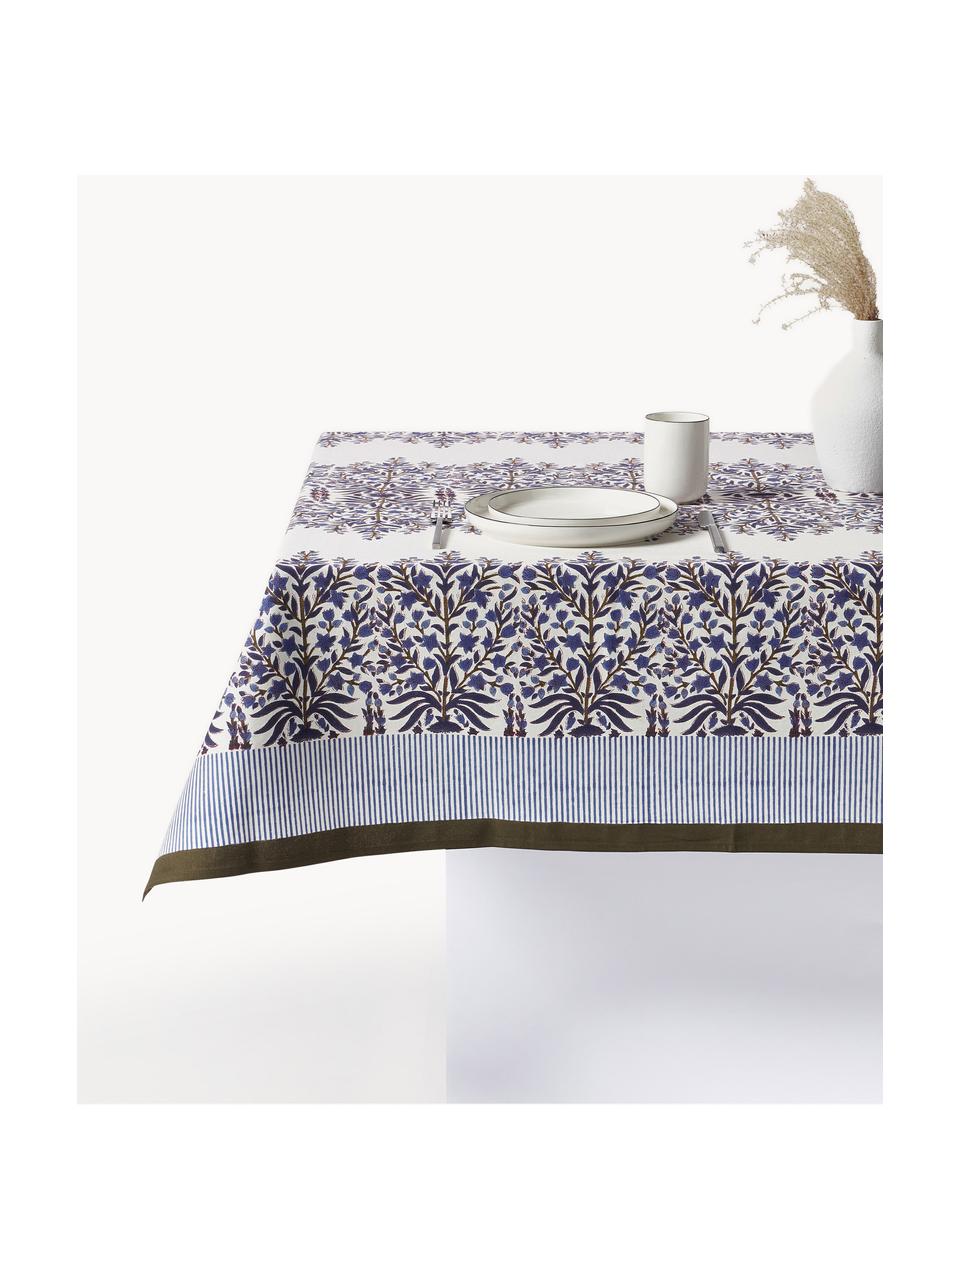 Nappe avec motif à fleurs Jasmine, 100 % coton, Bleu foncé, blanc cassé, brun, 6-8 personnes (larg. 150 cm x long. 250)